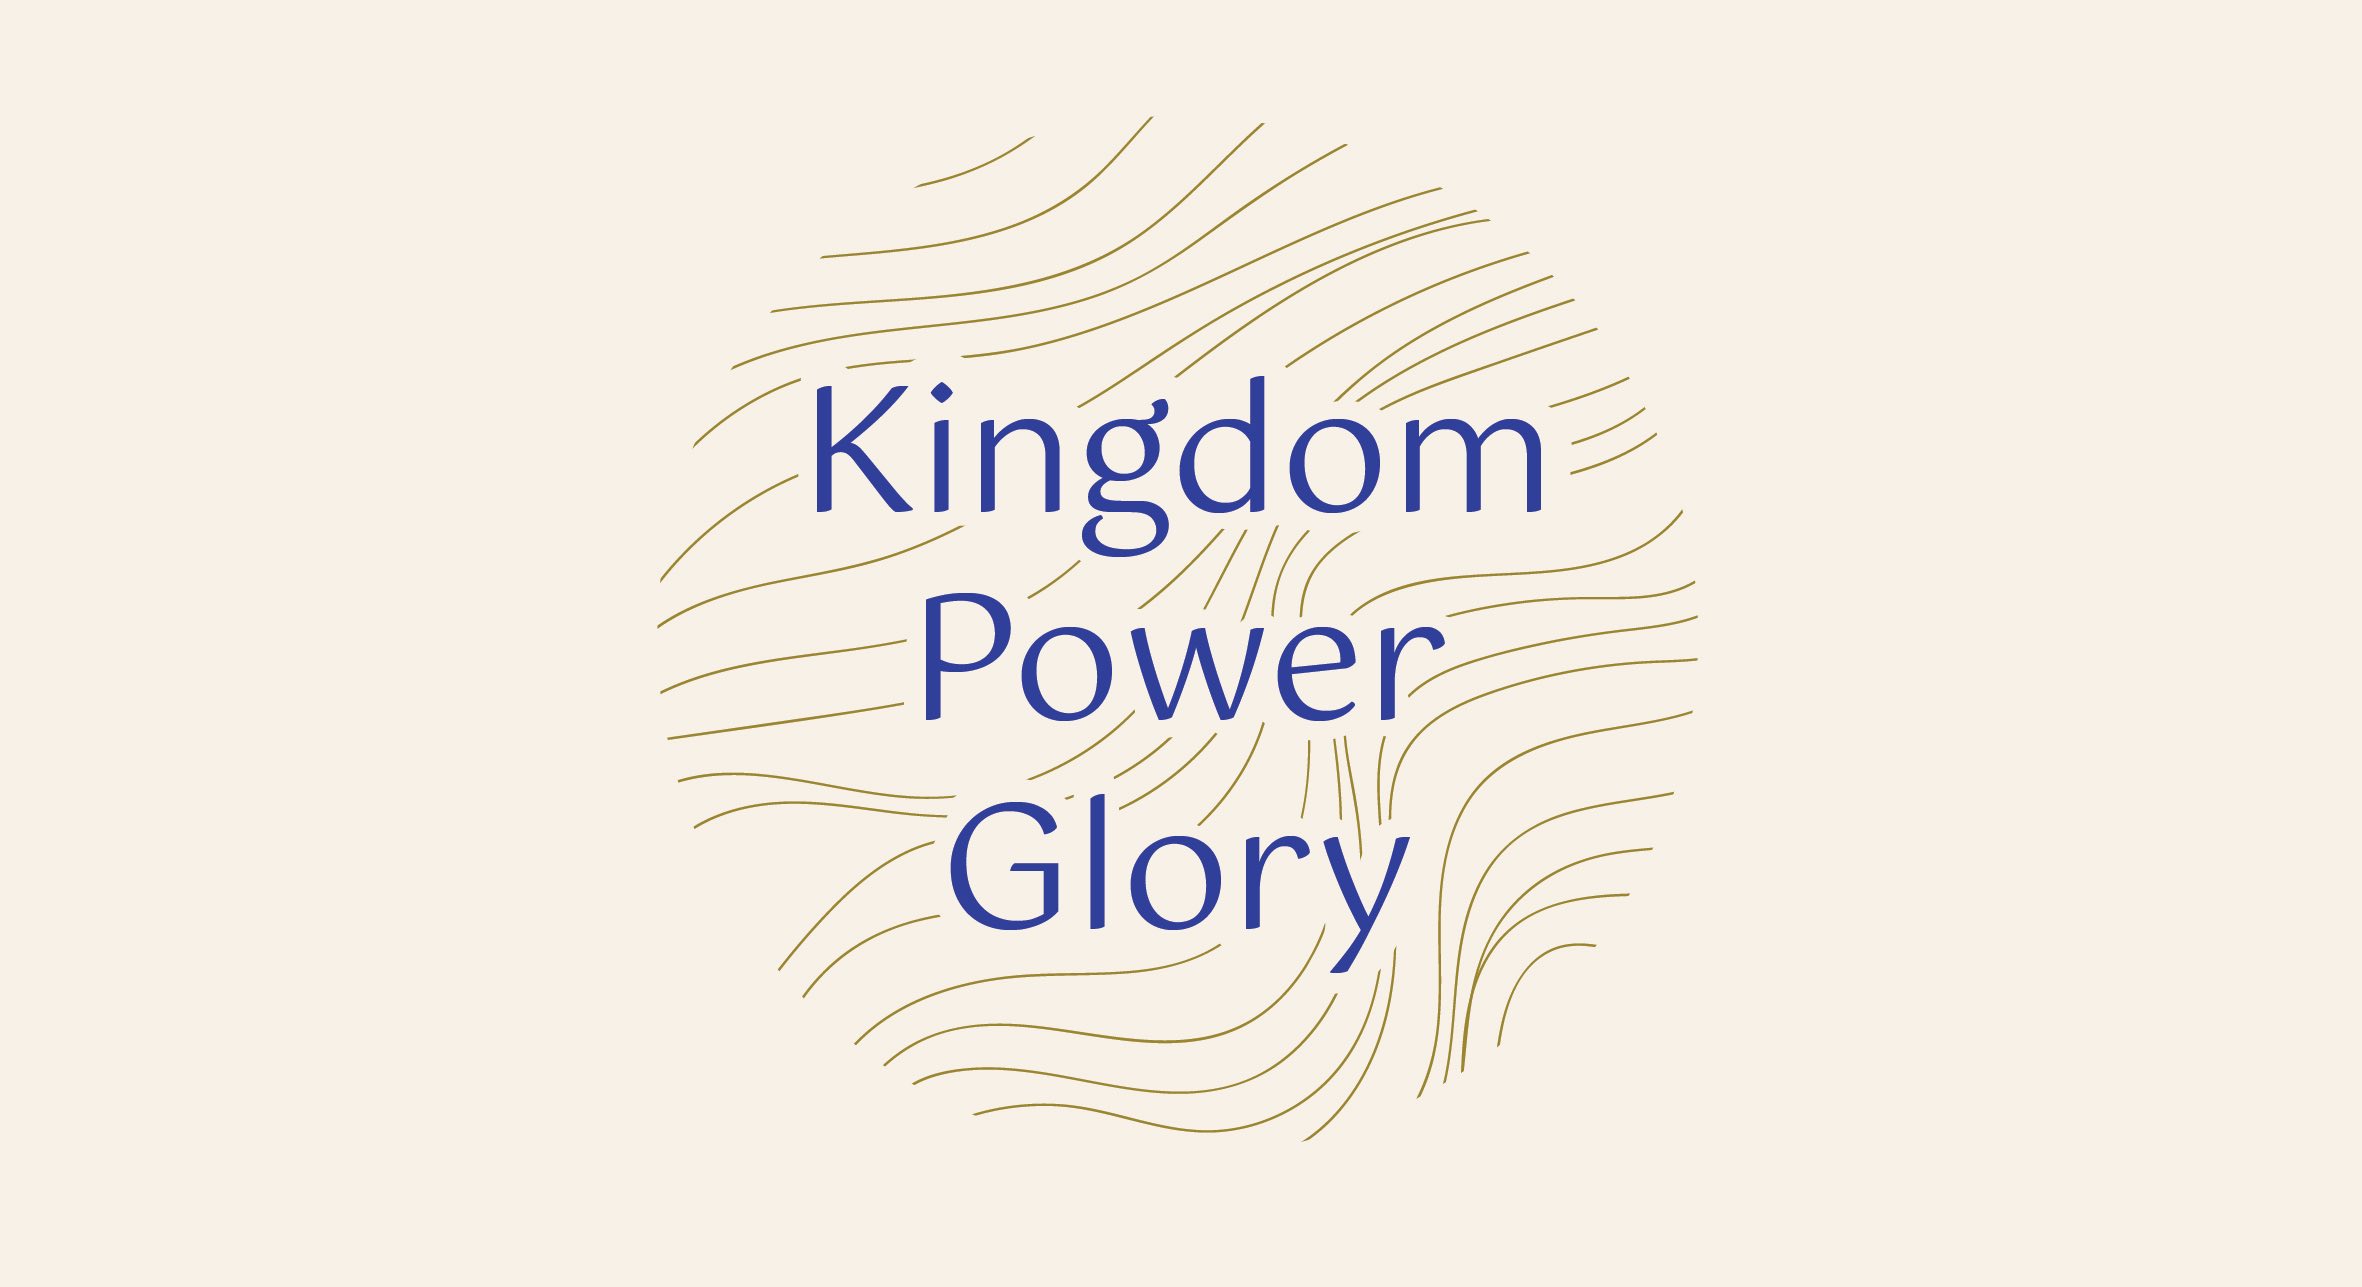 Kingdom Power Glory